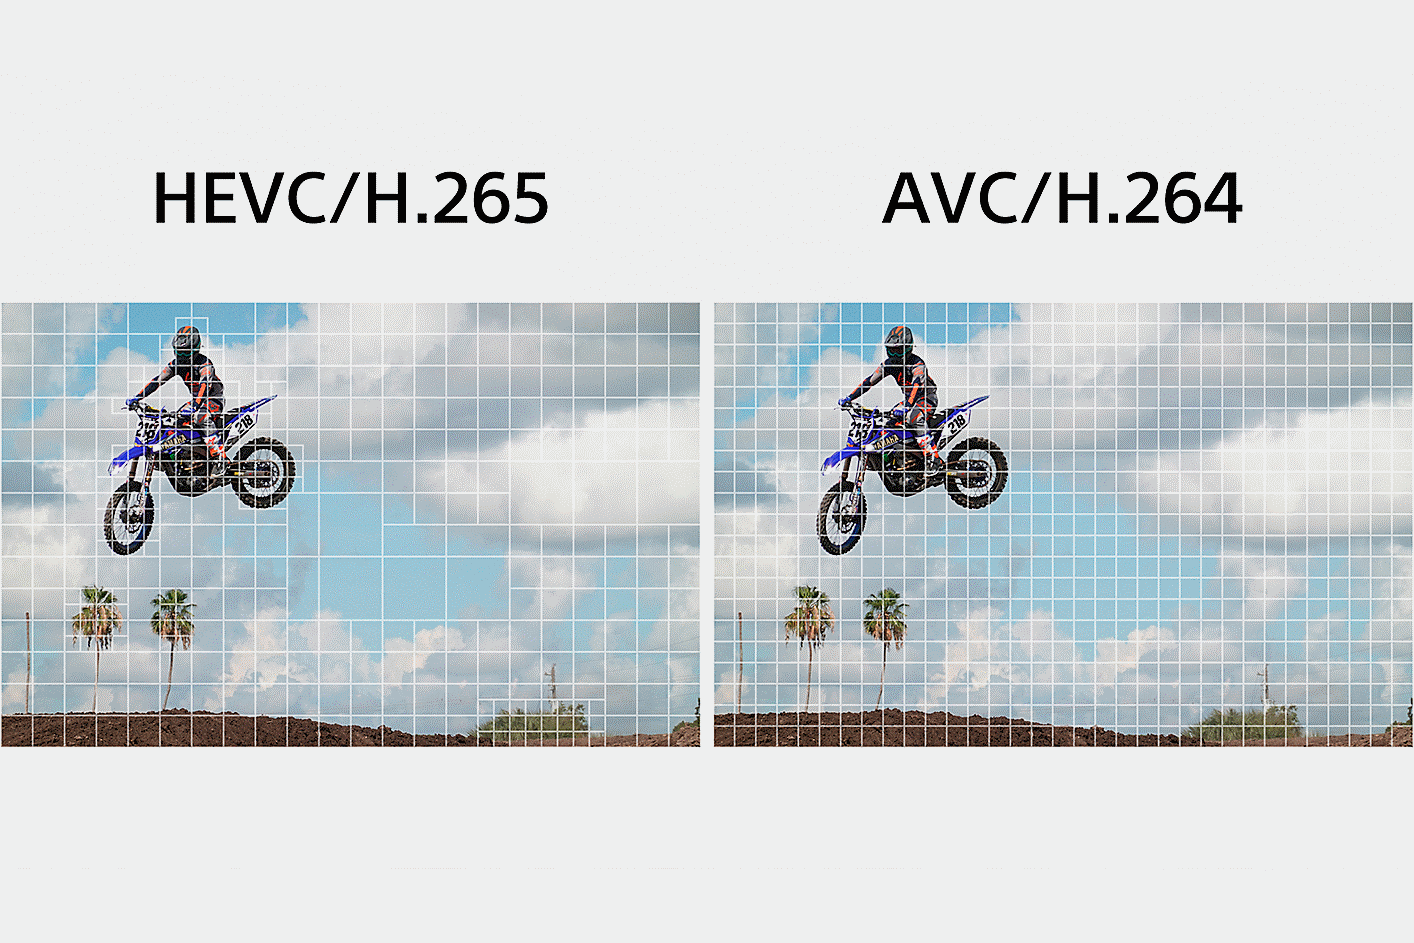 Vľavo: Ilustrácia, ako HEVC/H.265 rozdeľuje komplexné časti klipu na menšie segmenty na spracovanie údajov; Vpravo: Ilustrácia, ako AVC/H.264 rovnomerne rozdeľuje celý videozáznam na spracovanie údajov